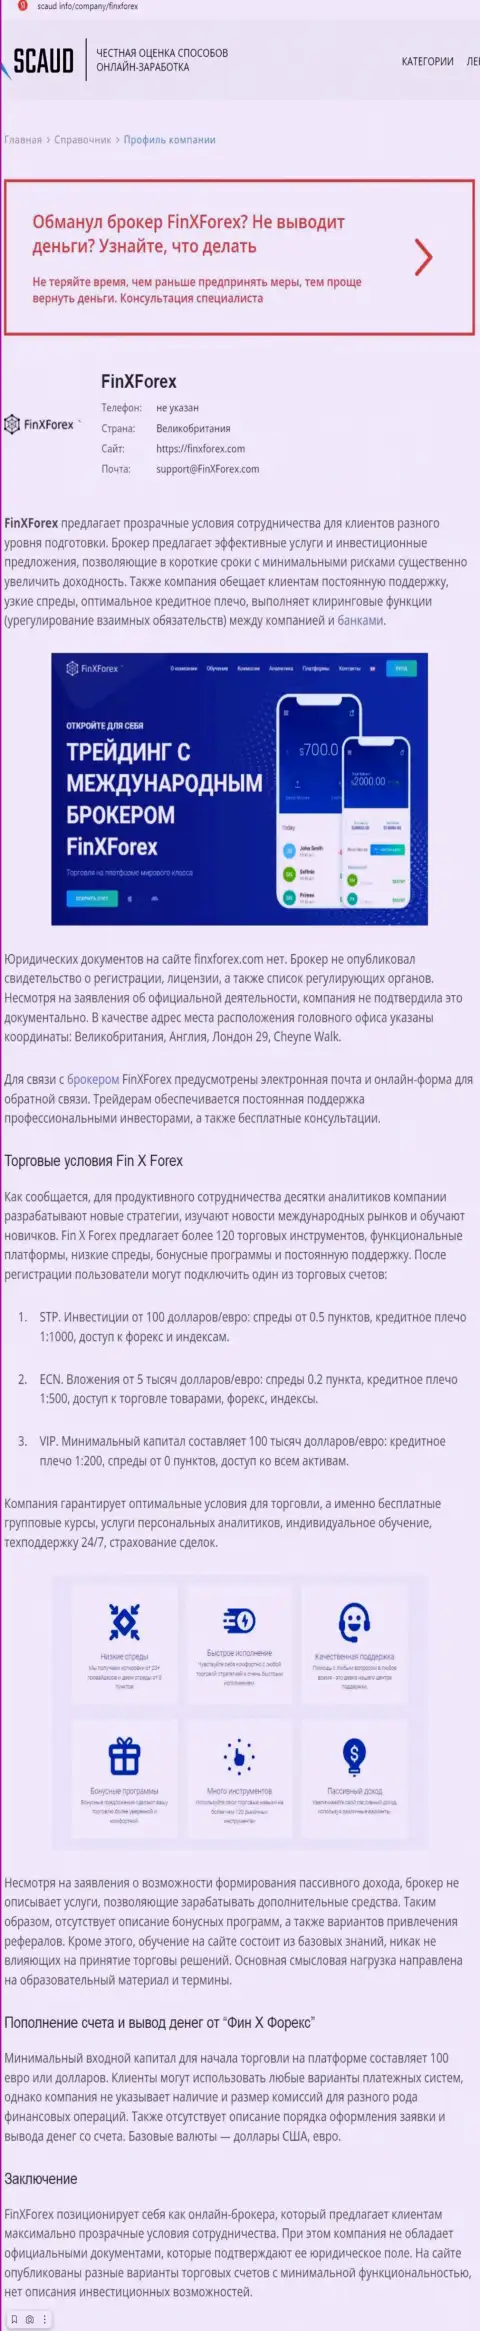 Обзорная статья с очевидными подтверждениями грабежа со стороны FinX Forex